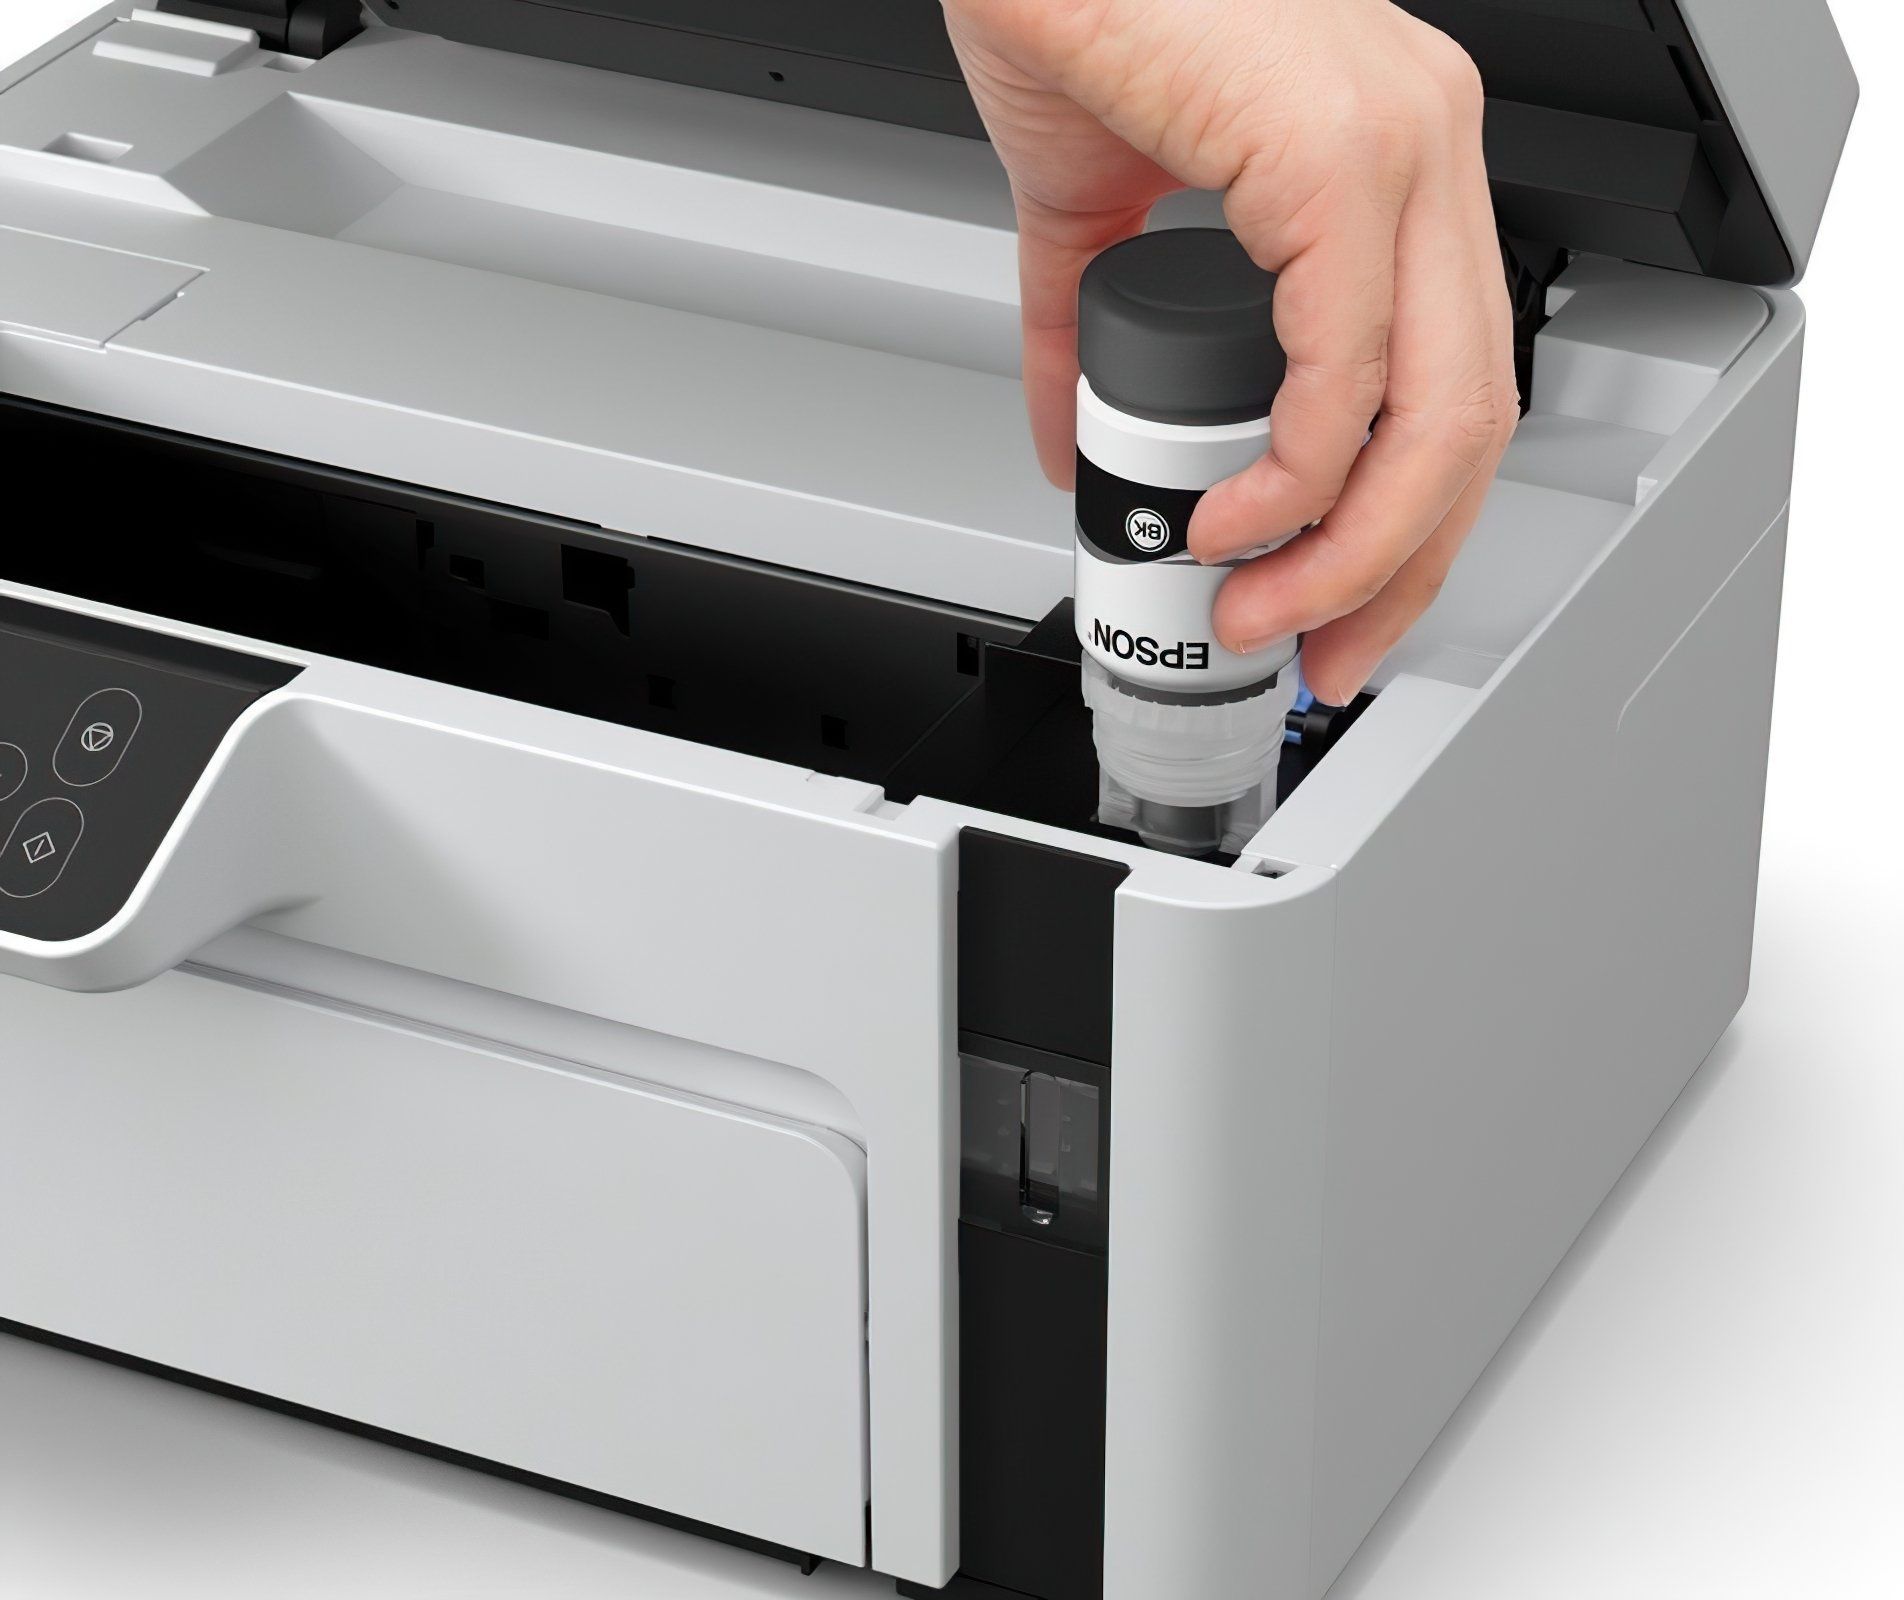 Принтер Epson M2110 (МФУ 3 в 1) официальная гарантия 1 год